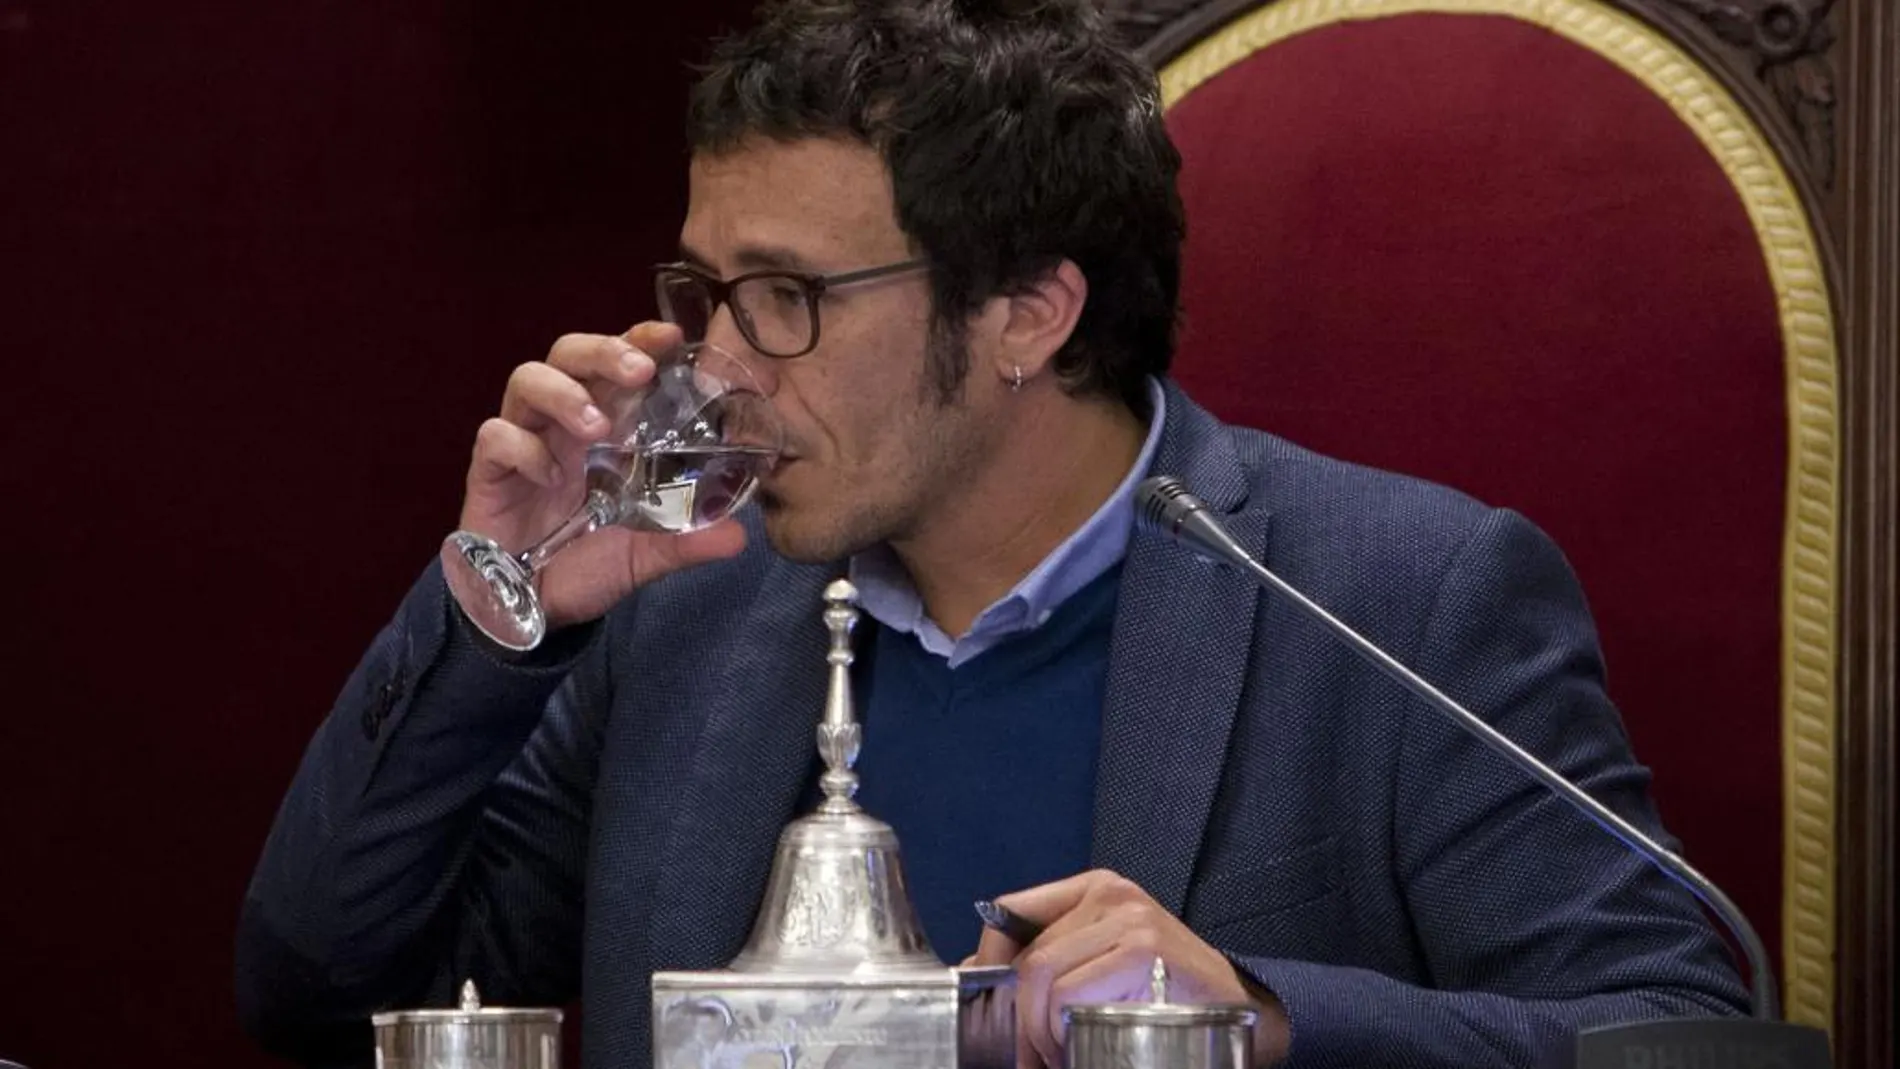 El alcalde de Cádiz de Podemos, José María González Santos "Kichi", bebe agua durante el Pleno Extraordinario celebrado hoy en el Ayuntamiento gaditano